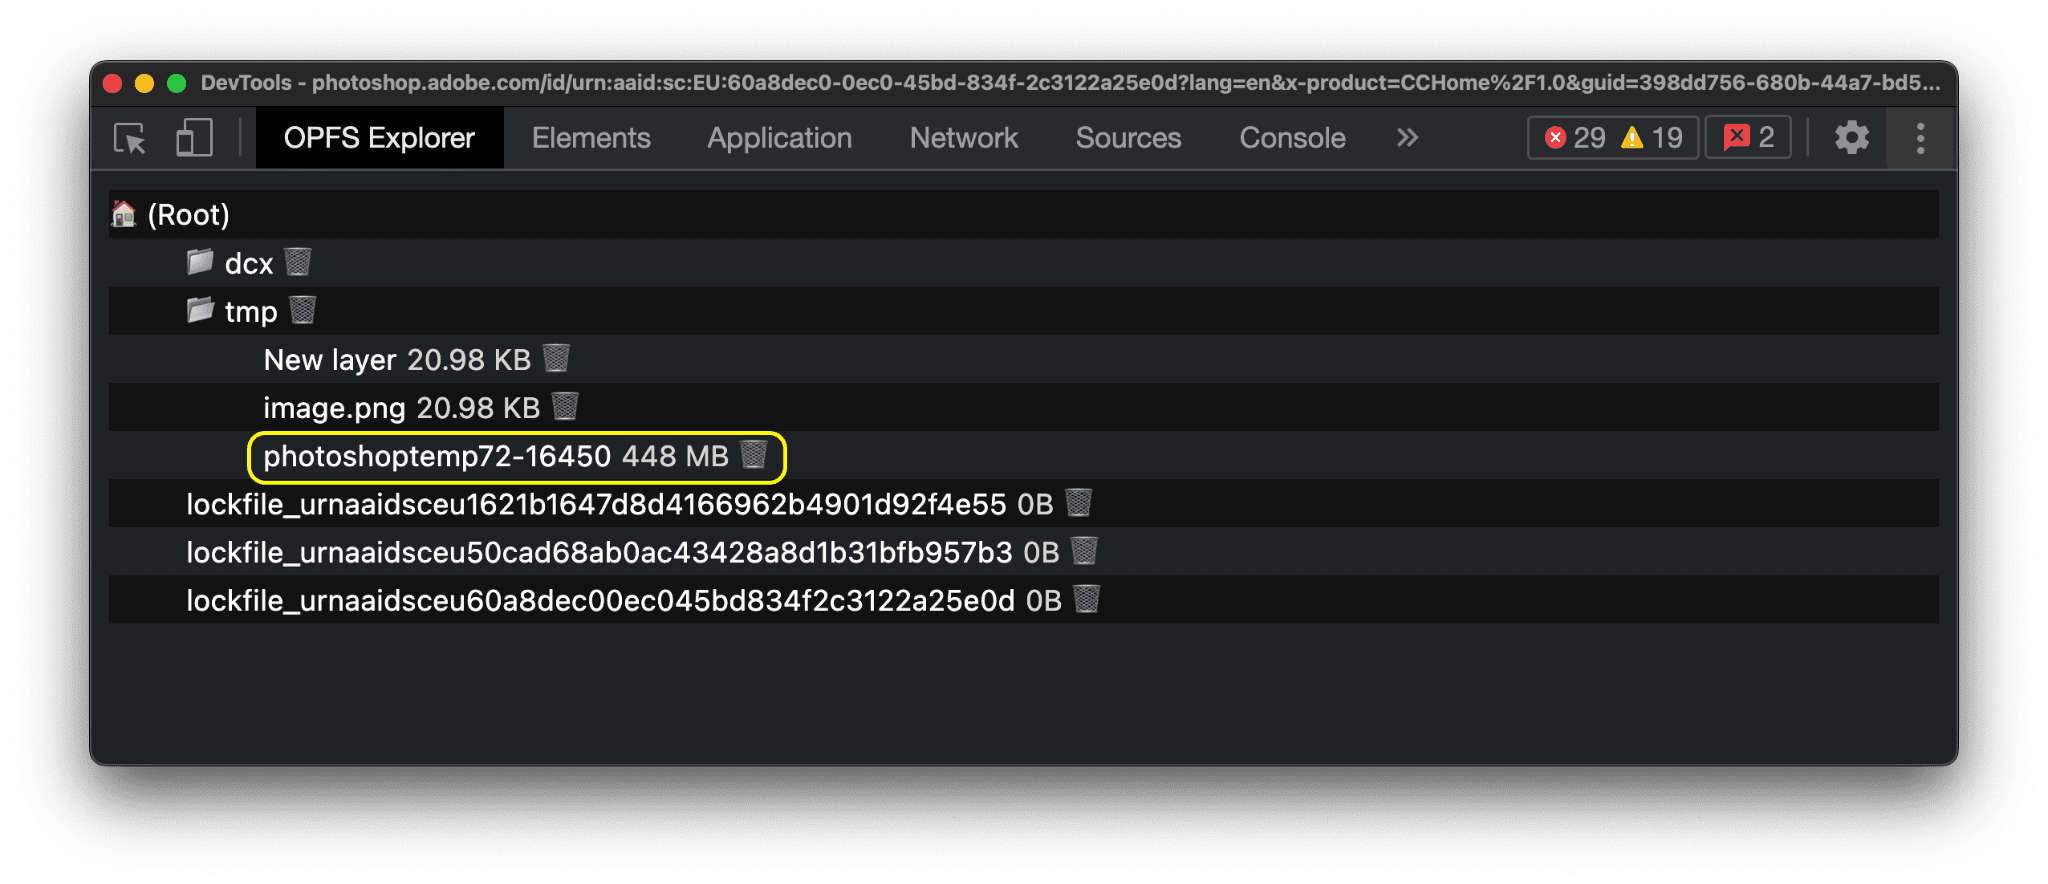 אנחנו בודקים את היררכיית הקבצים הפרטיים של מערכת הקבצים הפרטיים של Photoshop באמצעות התוסף ל-Chrome של OPFS Explorer.